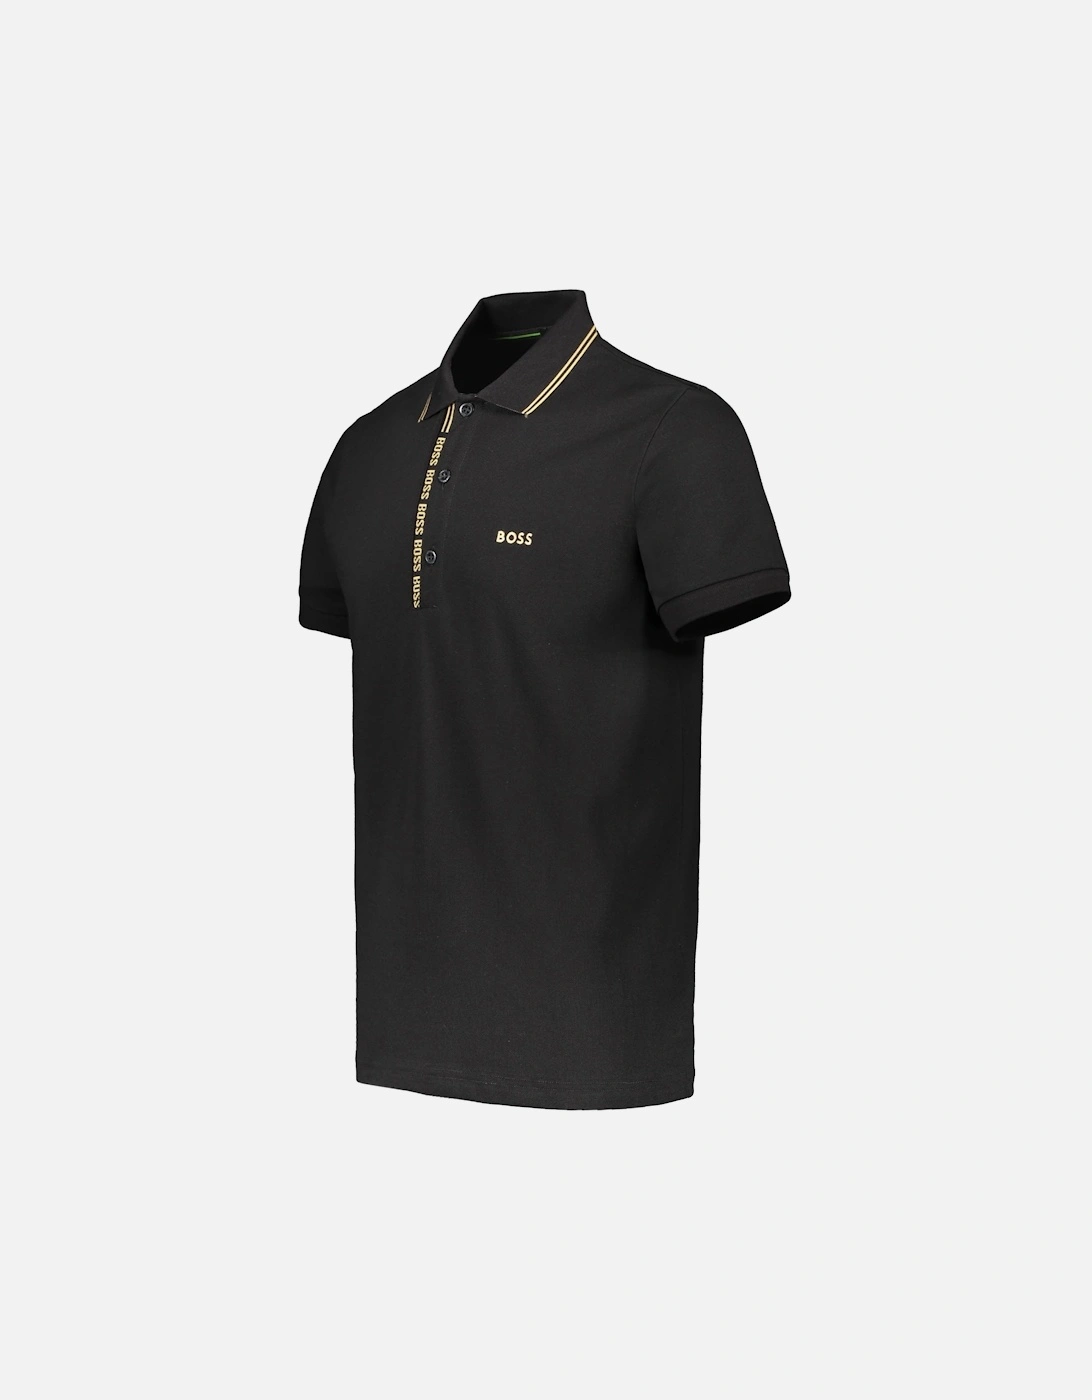 Paule 4 Polo Shirt - Black